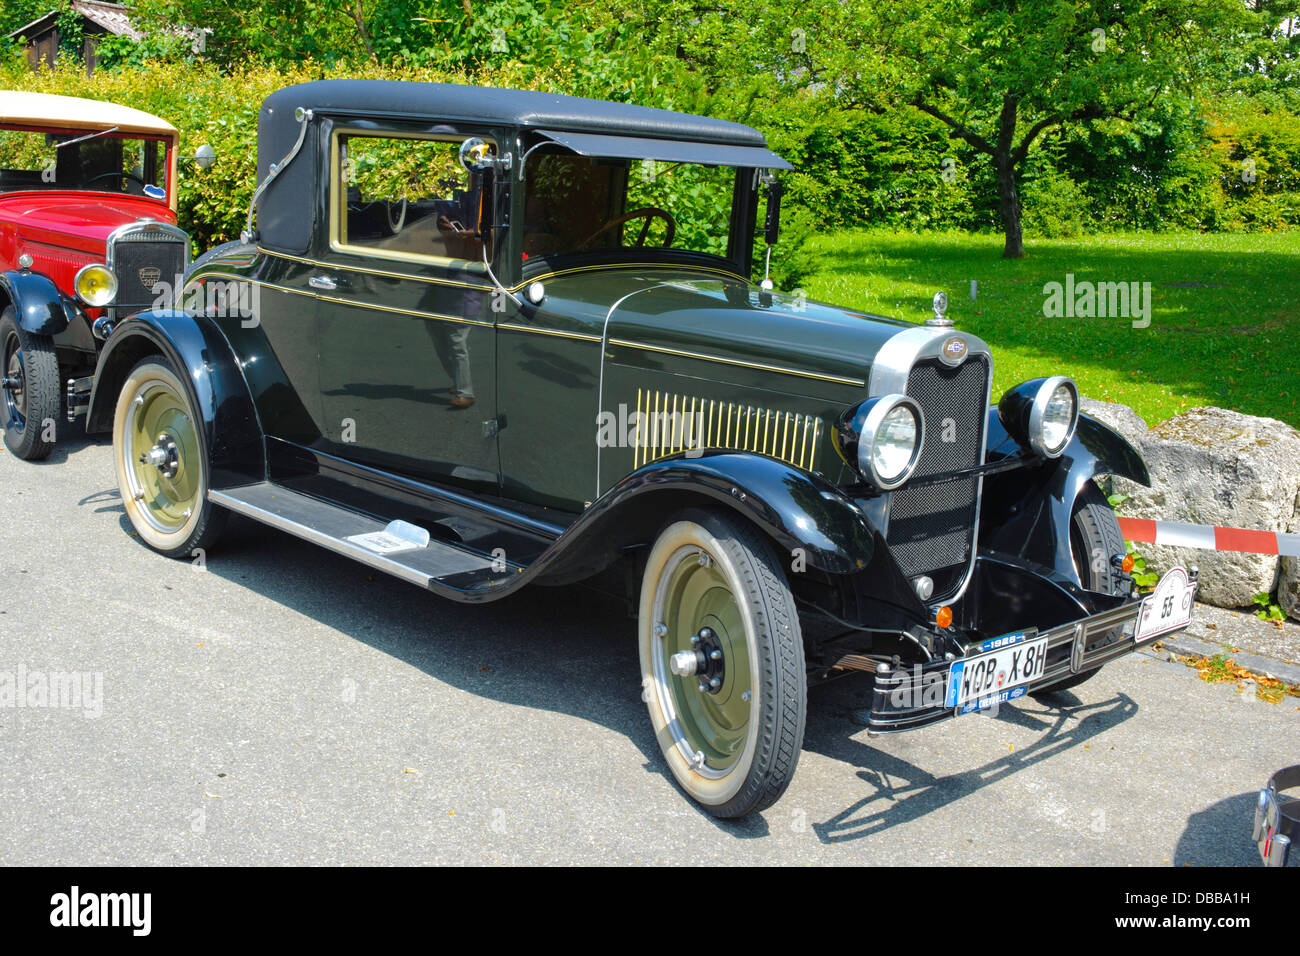 Oldtimer rallye pendant au moins 80 ans voitures anciennes avec AB National Chevrolet Coupé, construit à l'année 1928 Banque D'Images